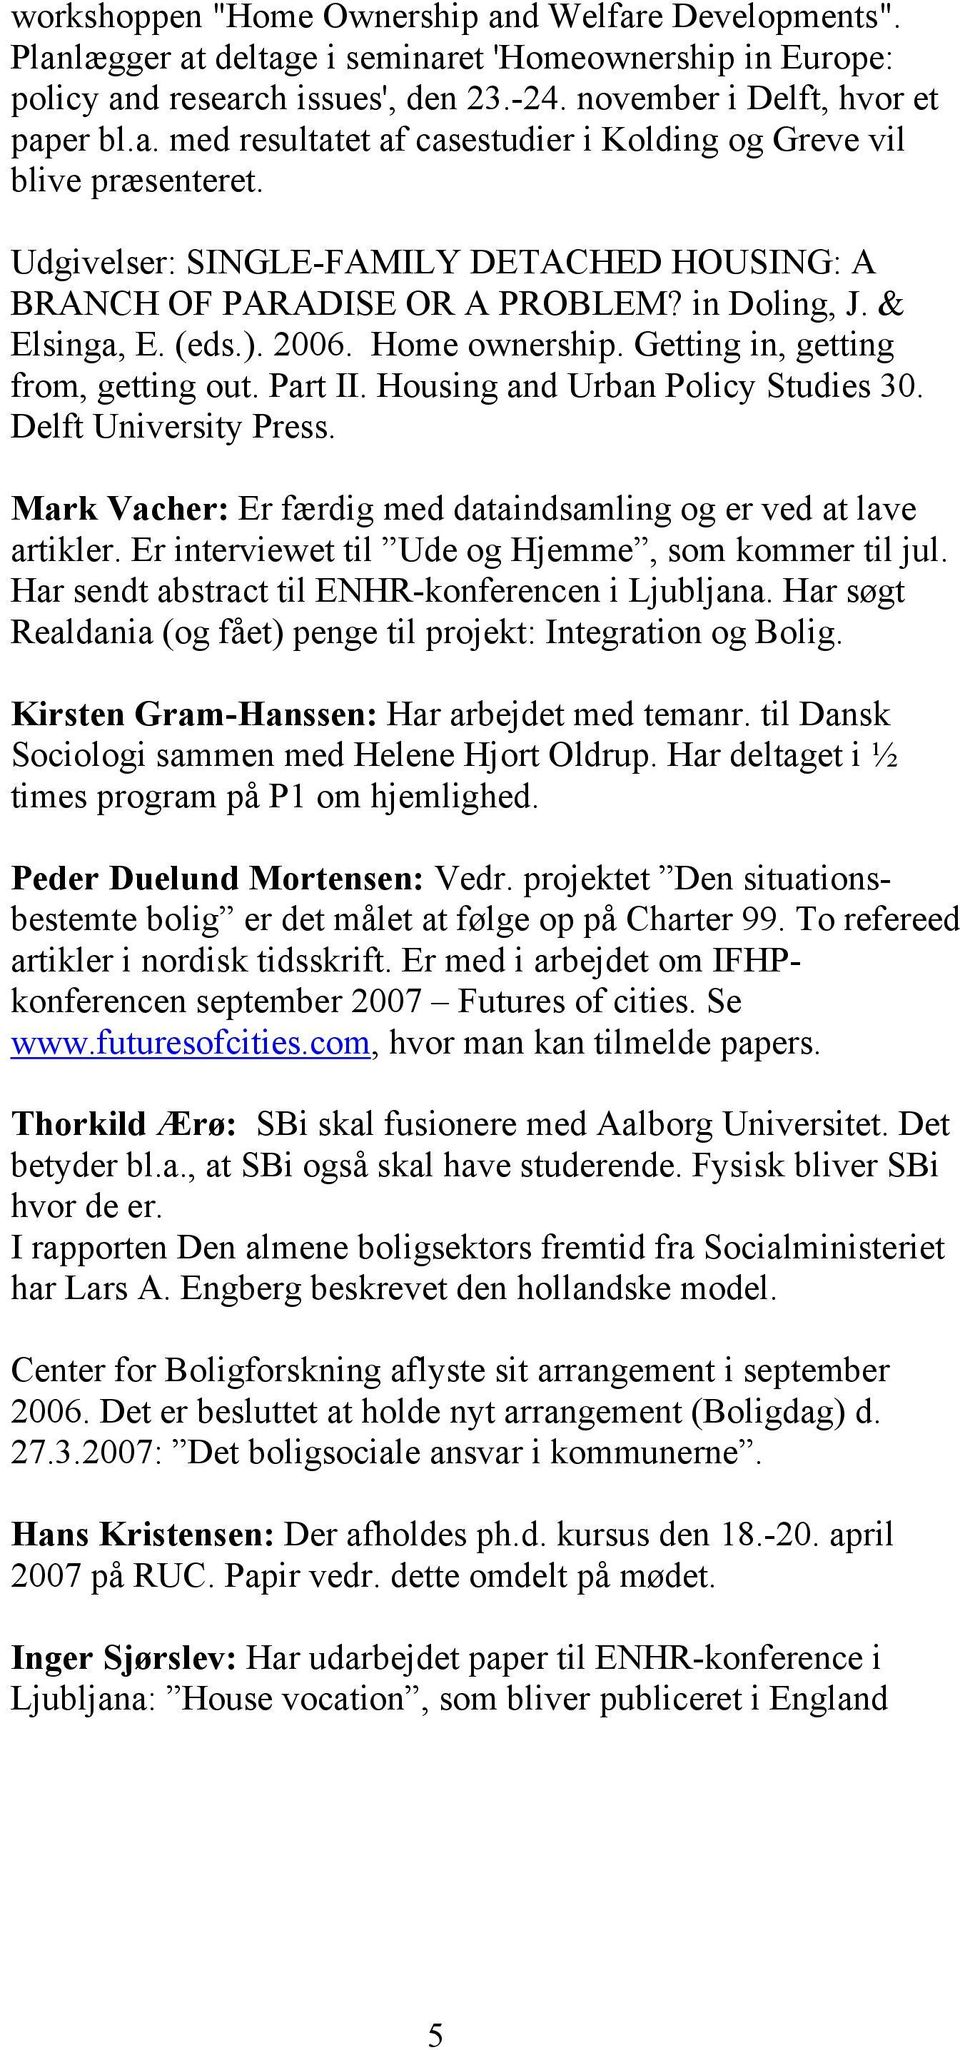 Housing and Urban Policy Studies 30. Delft University Press. Mark Vacher: Er færdig med dataindsamling og er ved at lave artikler. Er interviewet til Ude og Hjemme, som kommer til jul.